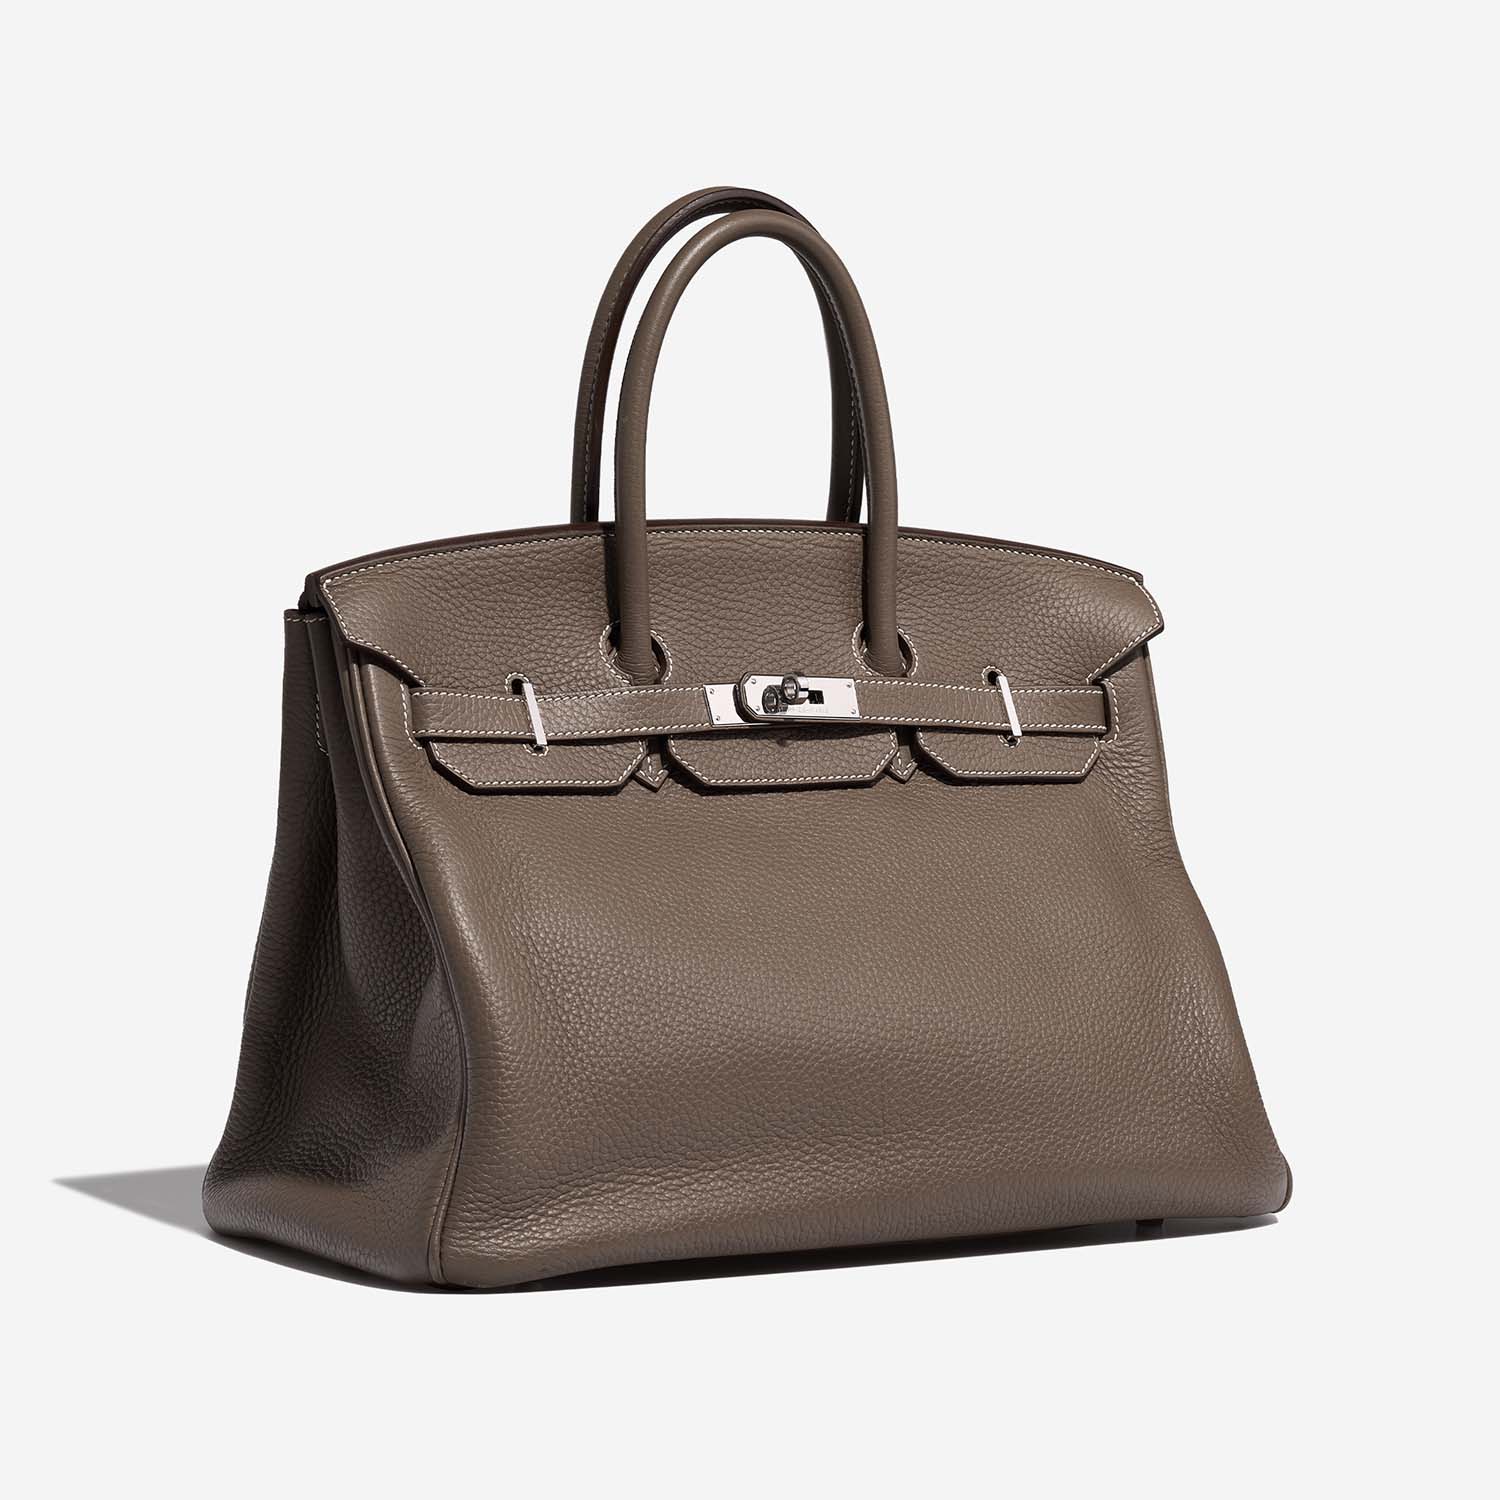 Hermès Birkin 35 Etoupe Side Front | Verkaufen Sie Ihre Designer-Tasche auf Saclab.com